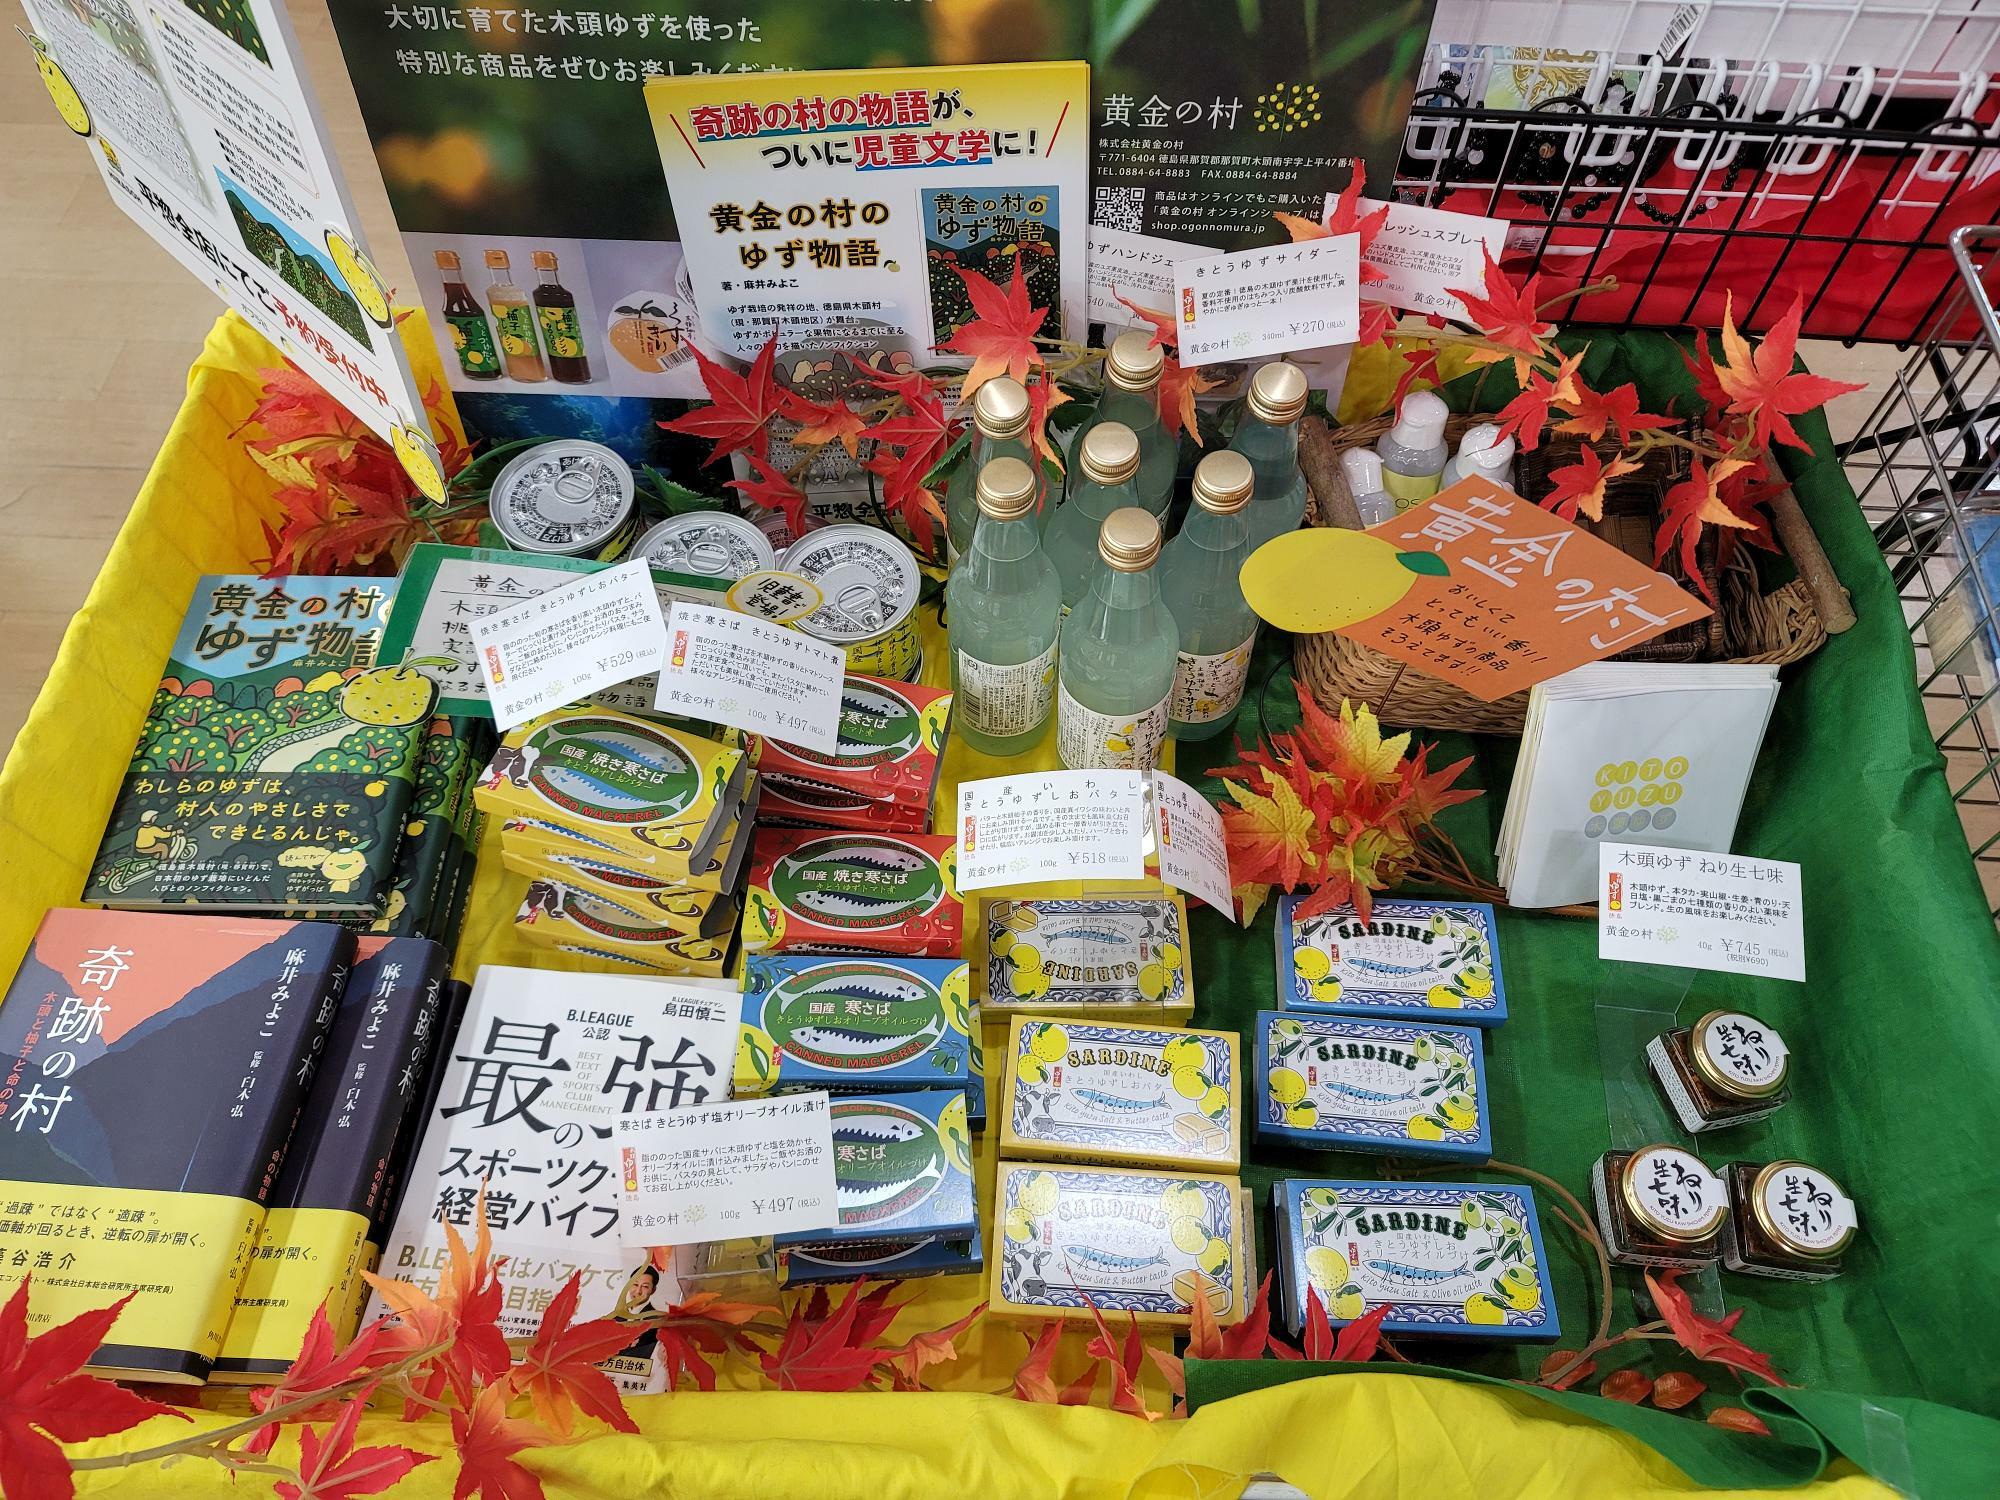 徳島県の特産物「木頭ゆず」を使用した商品